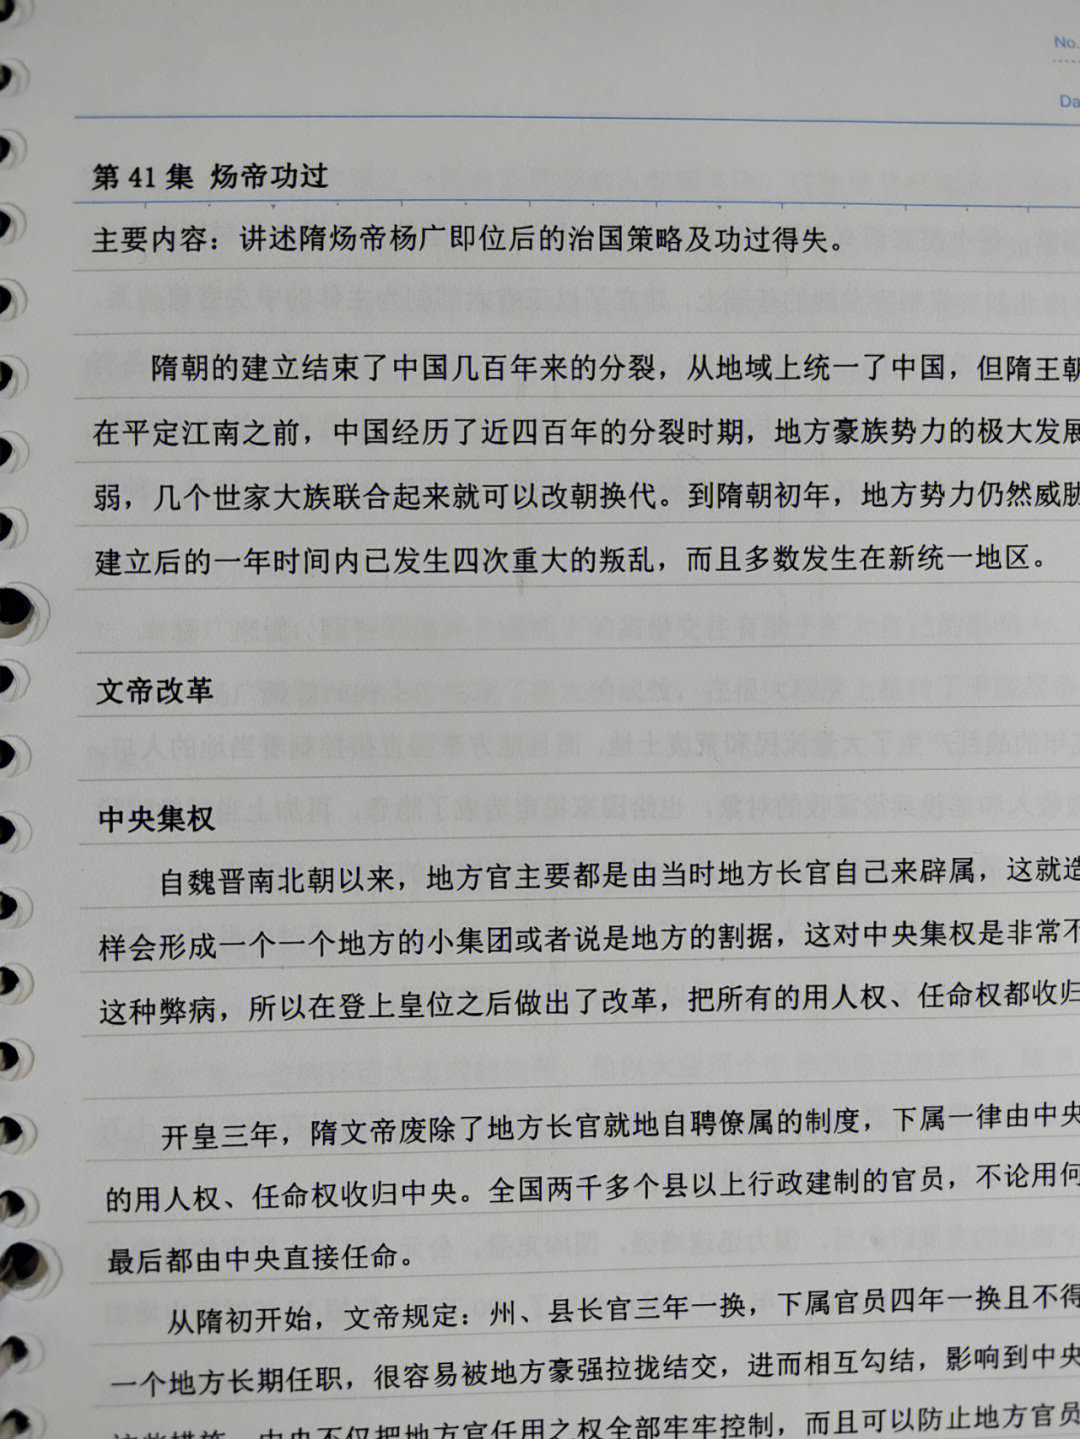 [红色心形r]不知不觉中,《中国通史》的笔记已经整理了一半,二十二万